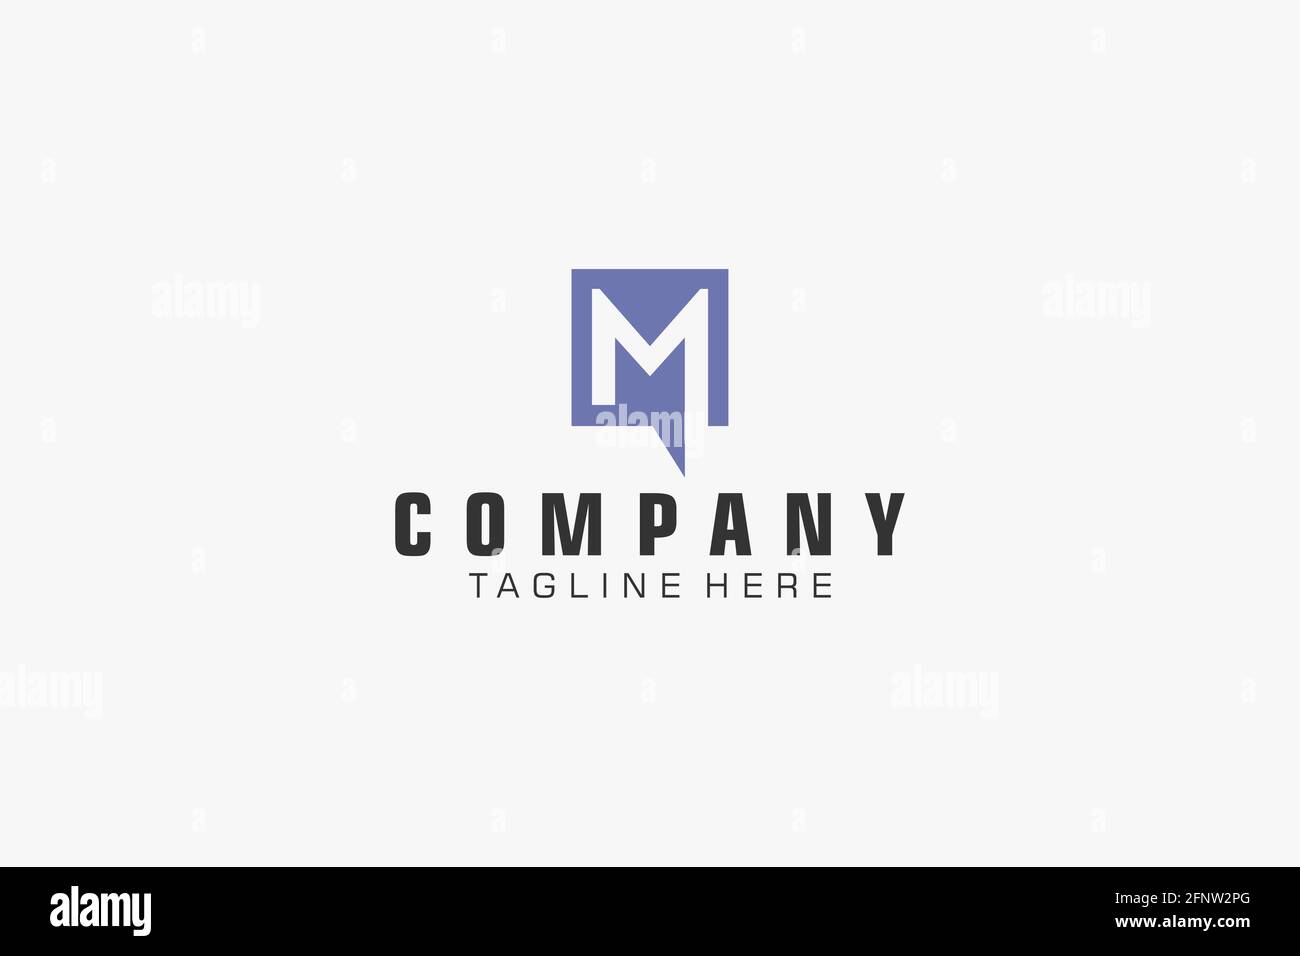 M logo design, Company logo Template